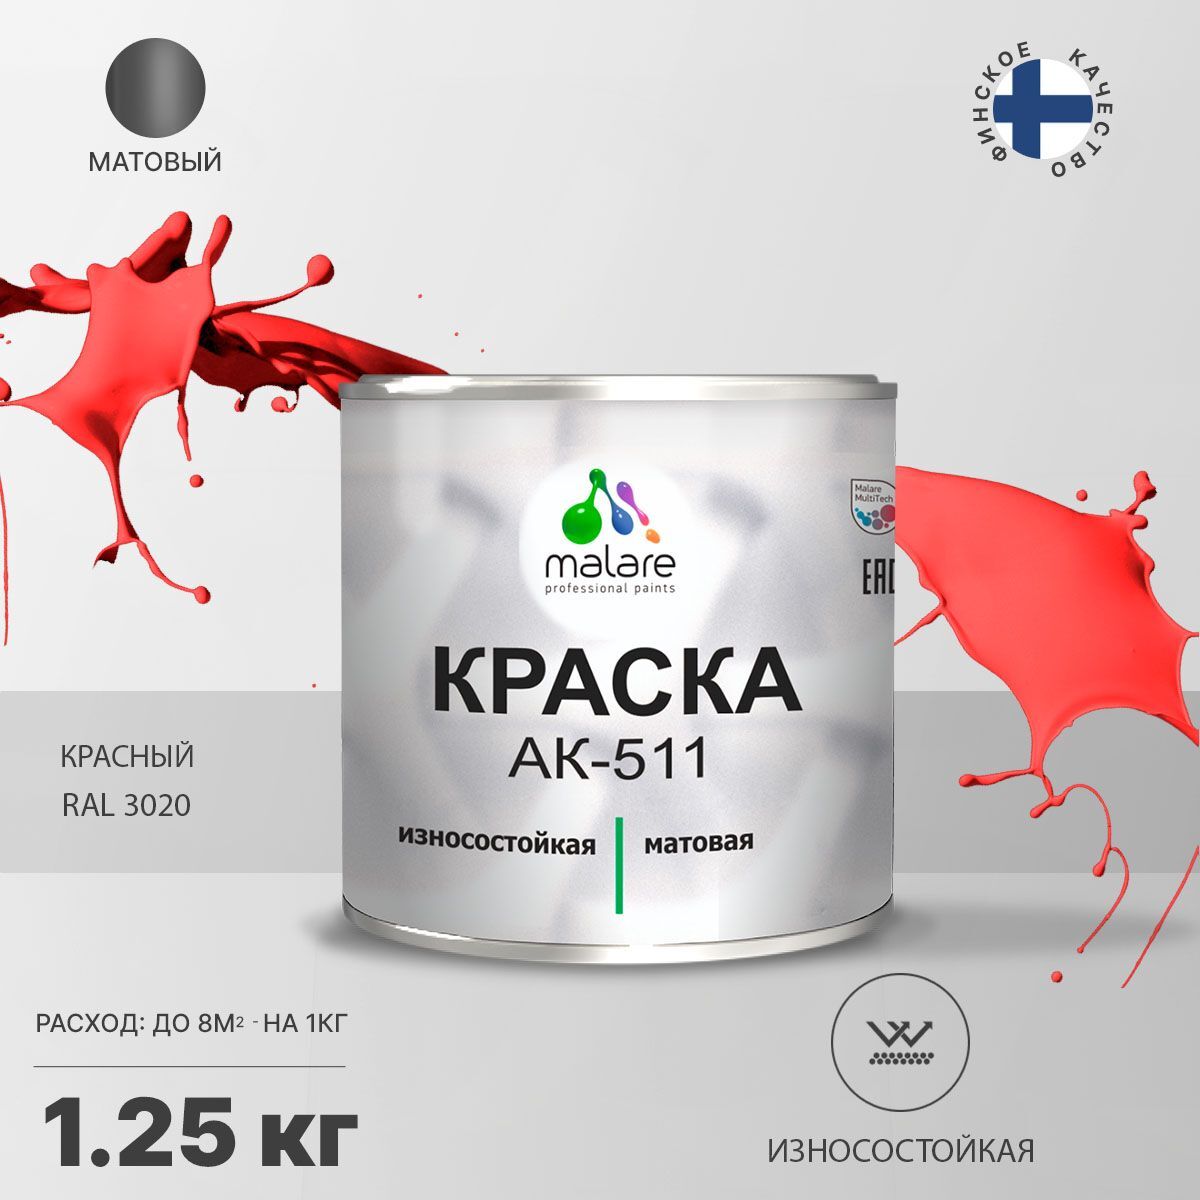 Краска Malare АК-511 высокопрочная Акрилатная, Акрилсополимерная, RAL 3020, 1,25 кг